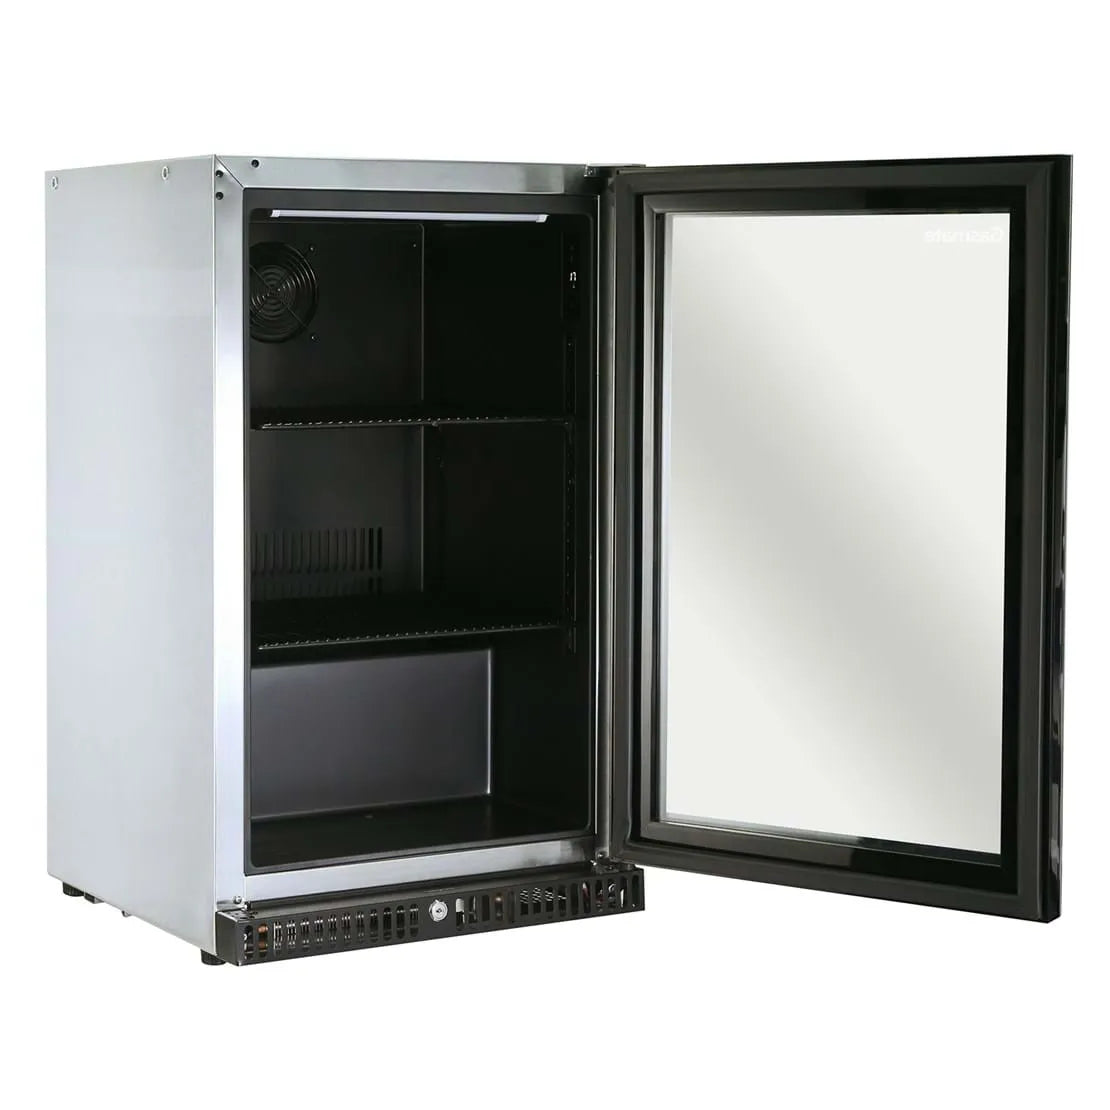 Gasmate Premium Single Glass Door Bar Fridge Black Interior - 97L